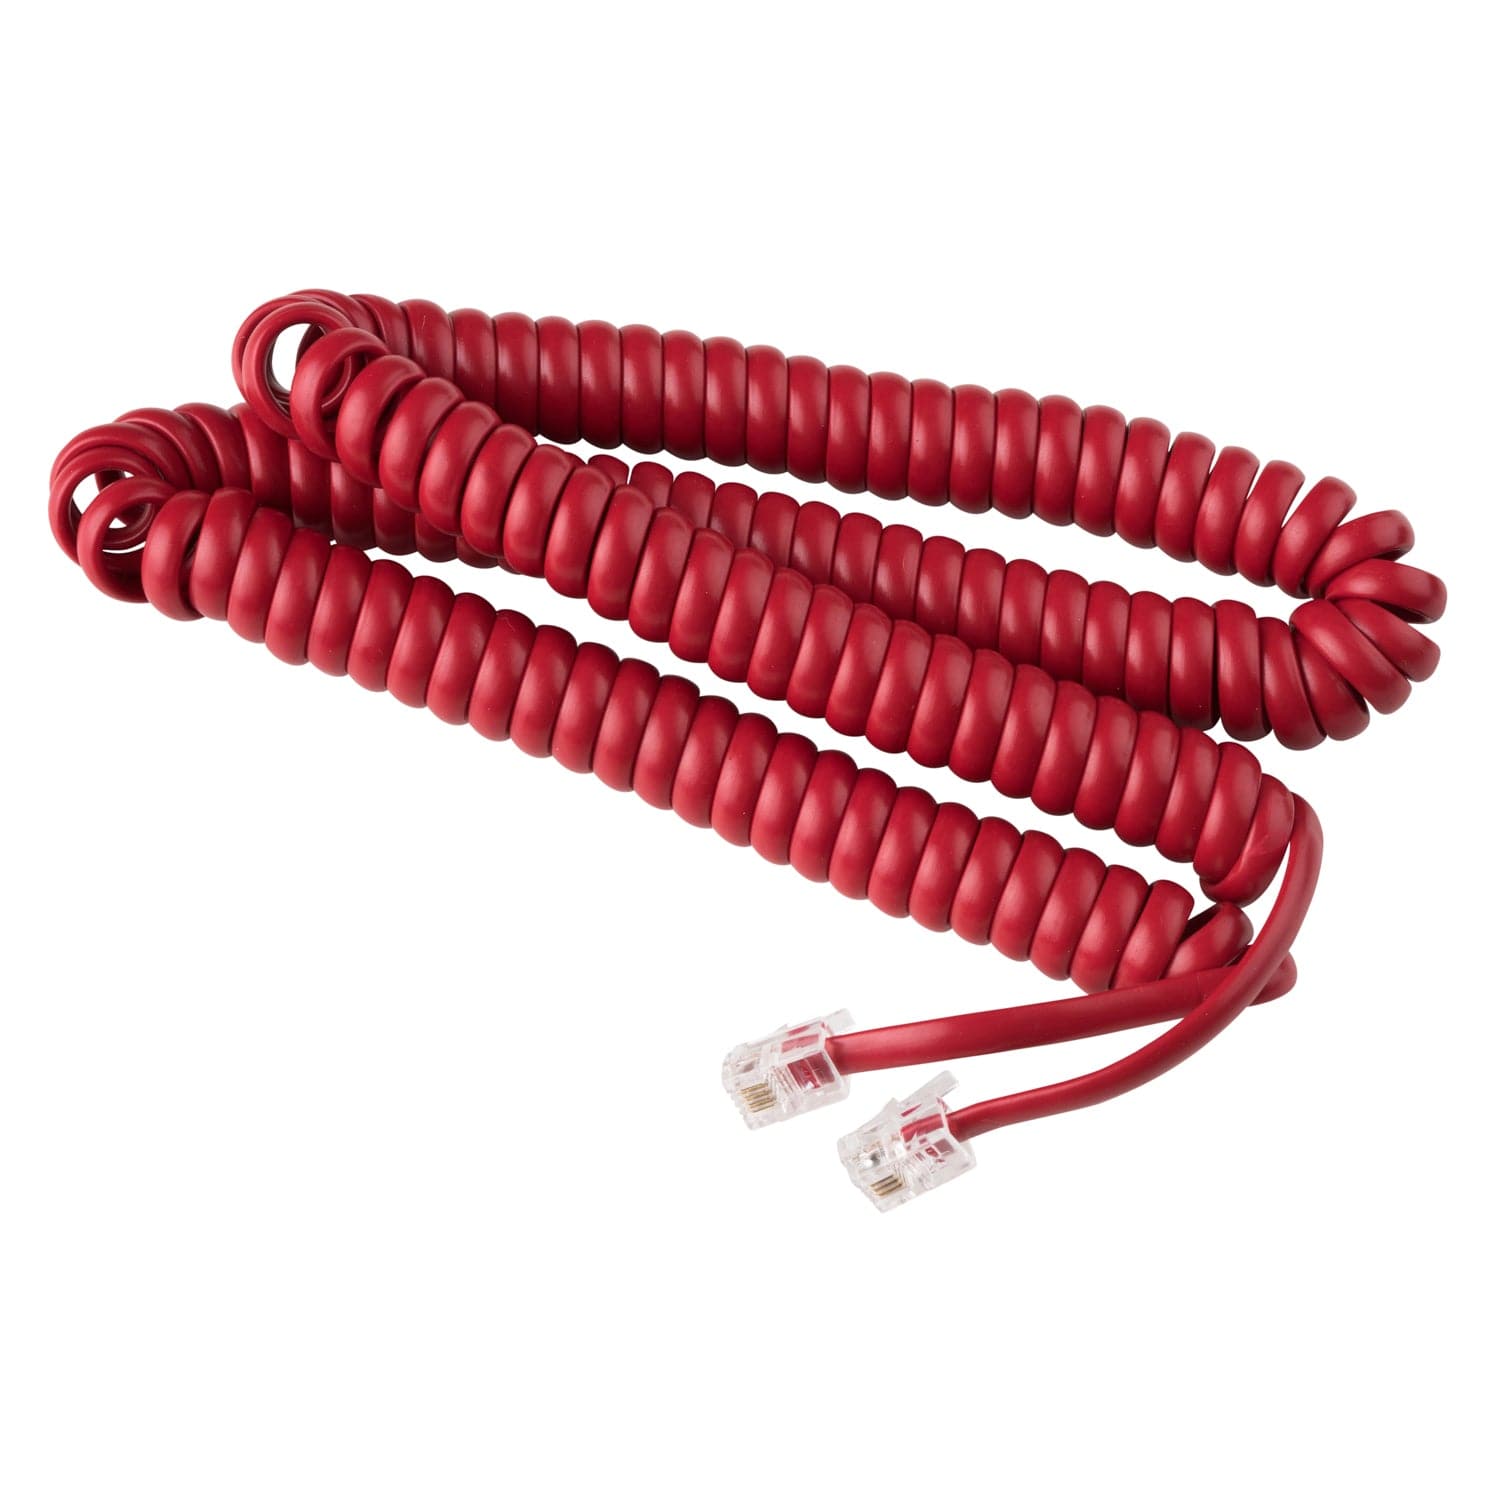 15 ft Telephone Handset Cord for Landline Phone - Crimson Red